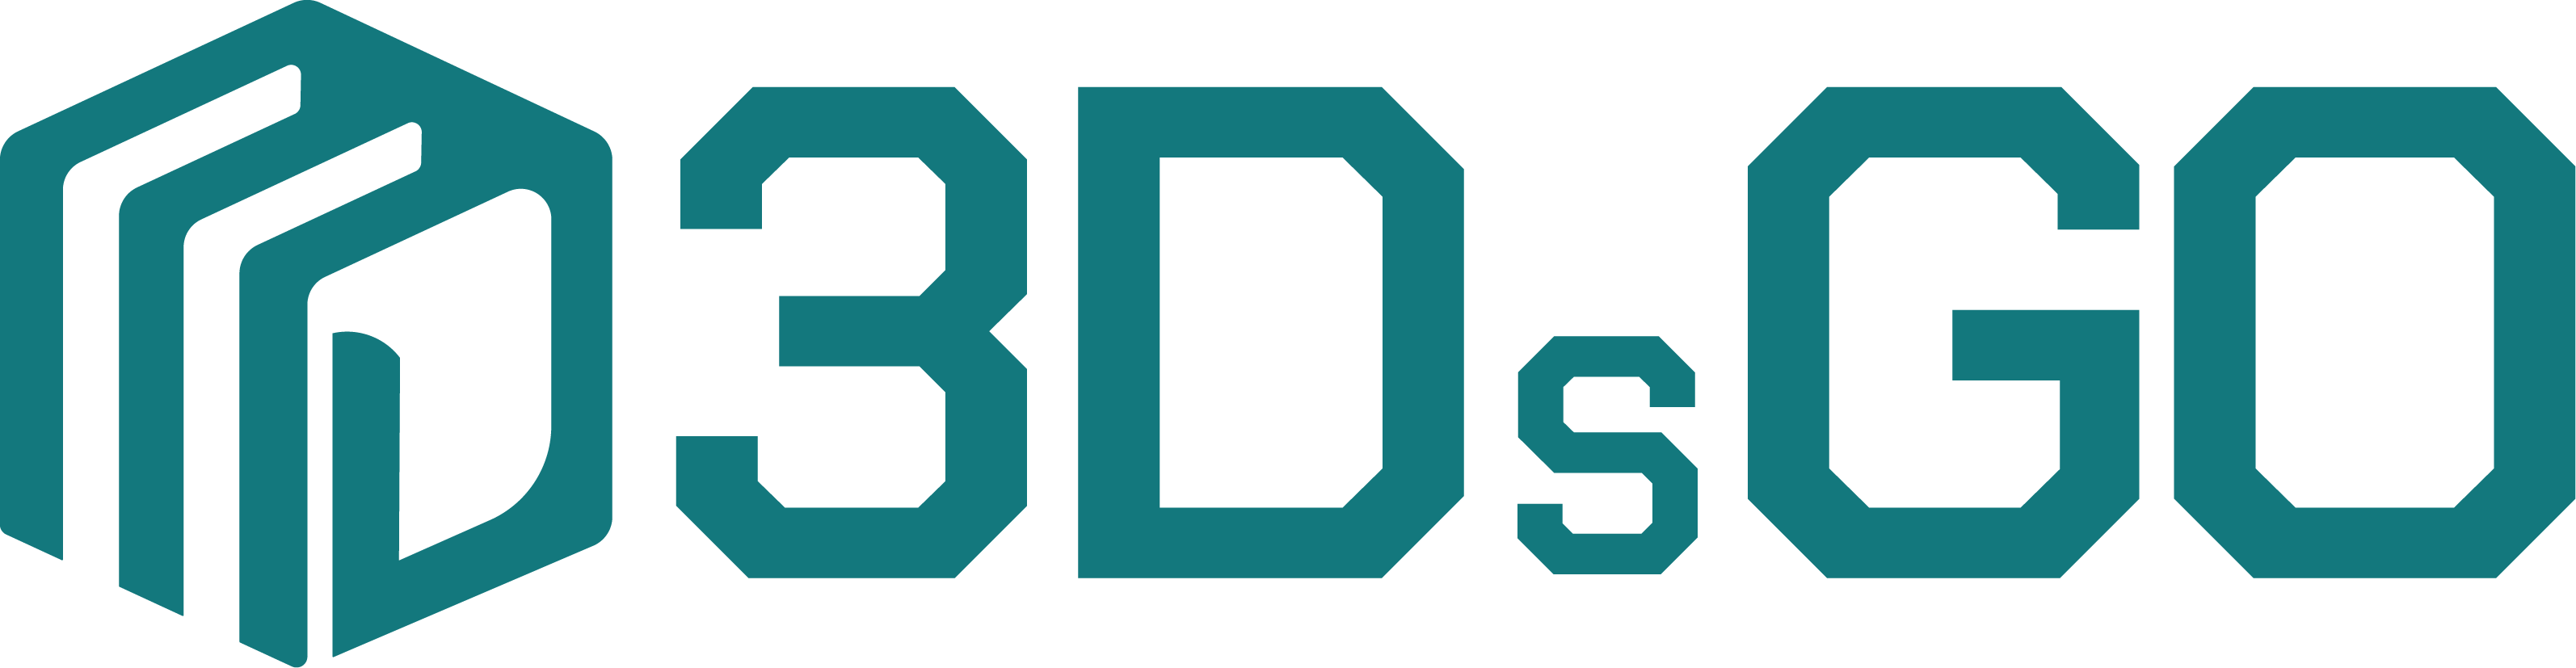 3Ds Go Logo